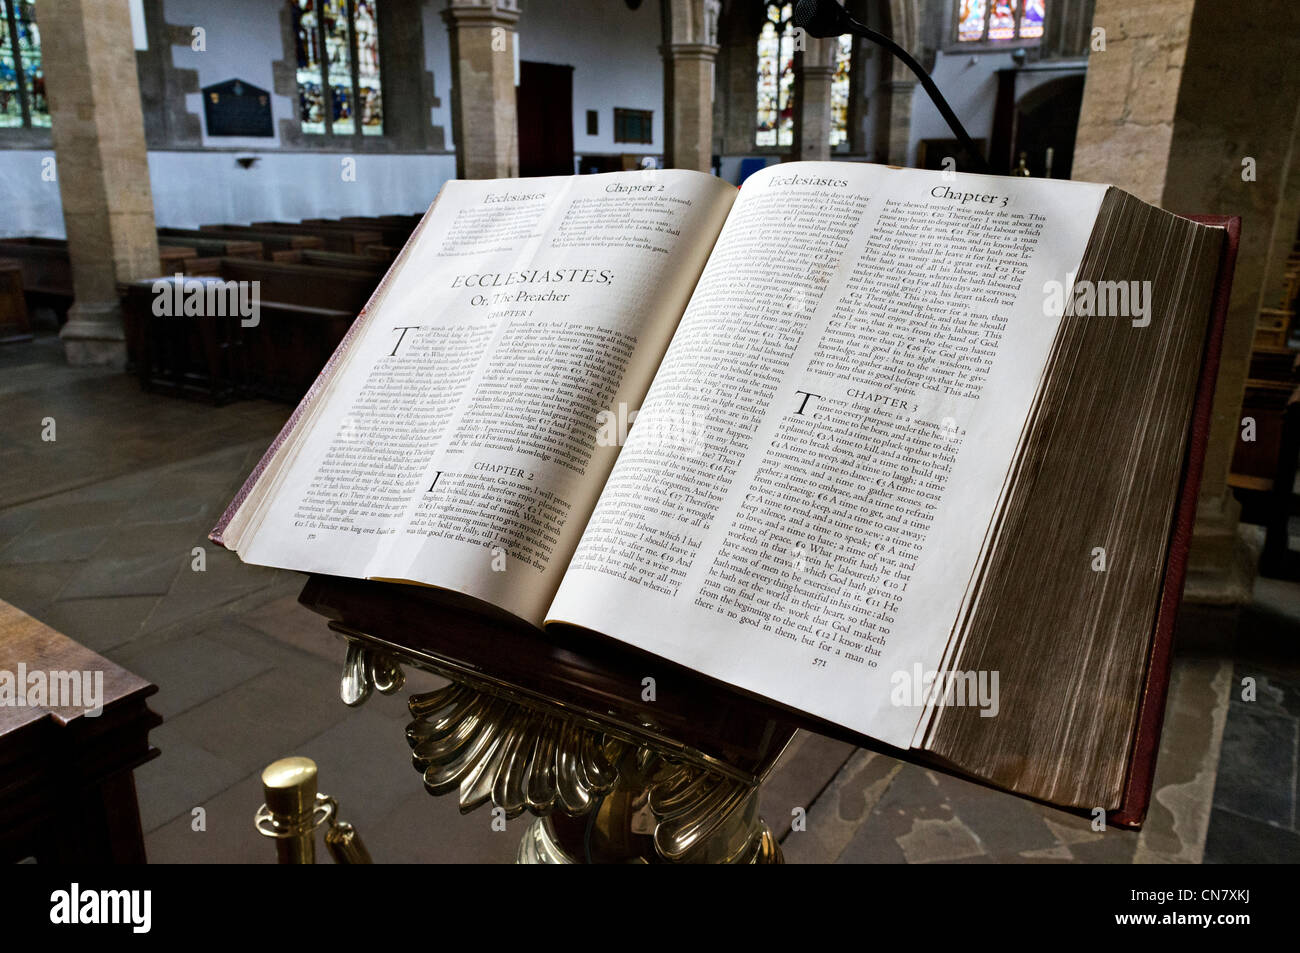 Sainte bible ouverte sur le livre de l'Ecclésiaste, l'église de la Sainte Trinité, Stratford-upon-Avon, Warwickshire, England, UK Banque D'Images